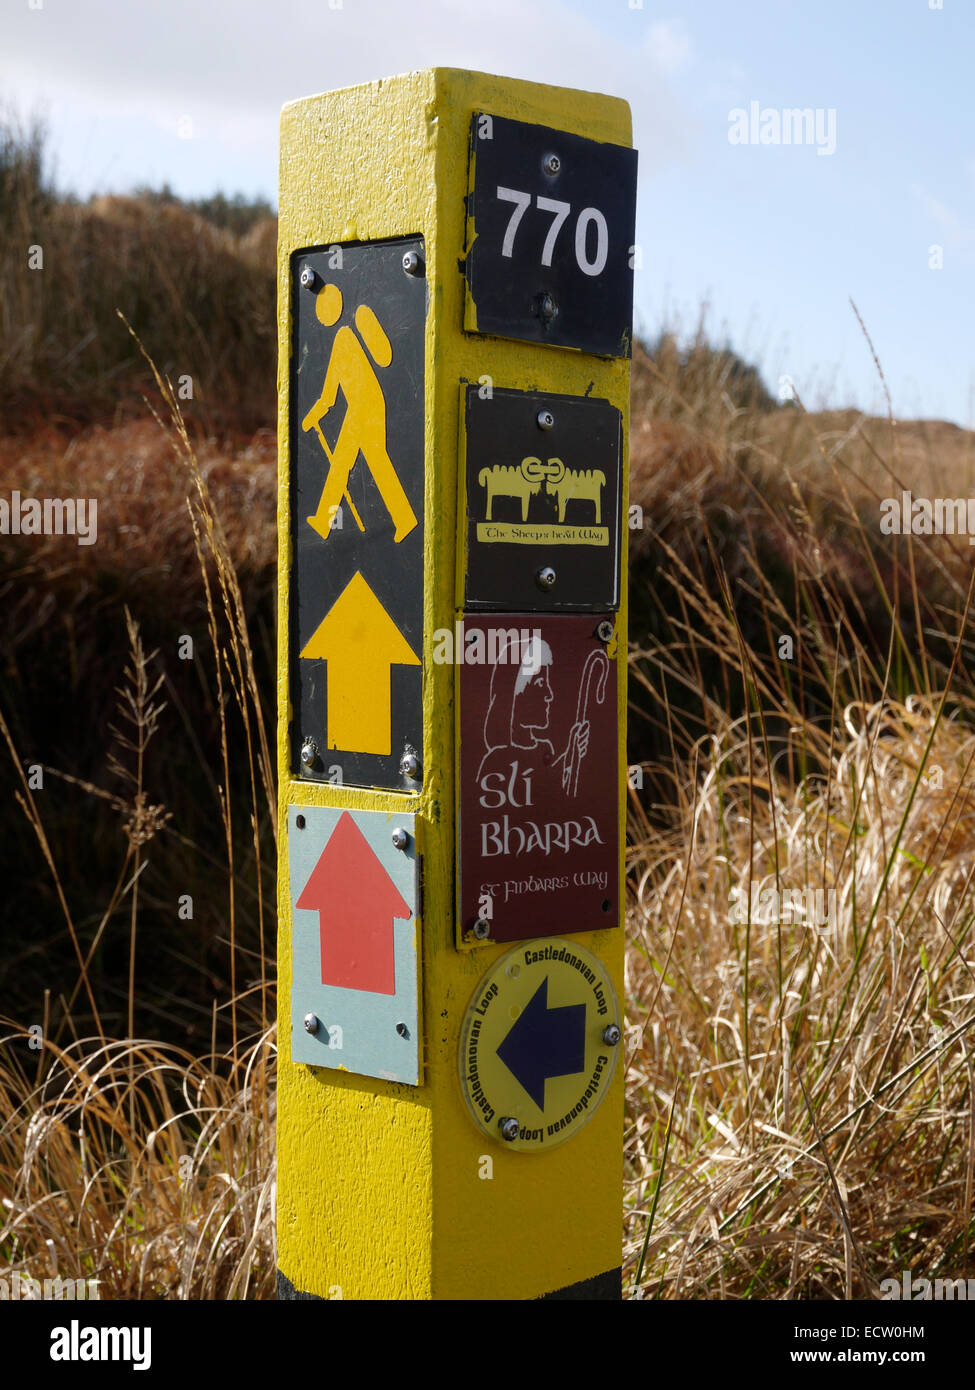 Waymark signe sur l'Mullaghmesha à pied Boucle, comté de Cork, Irlande. Affiche les logos de la tête de mouton et du chemin St Finbarr Banque D'Images